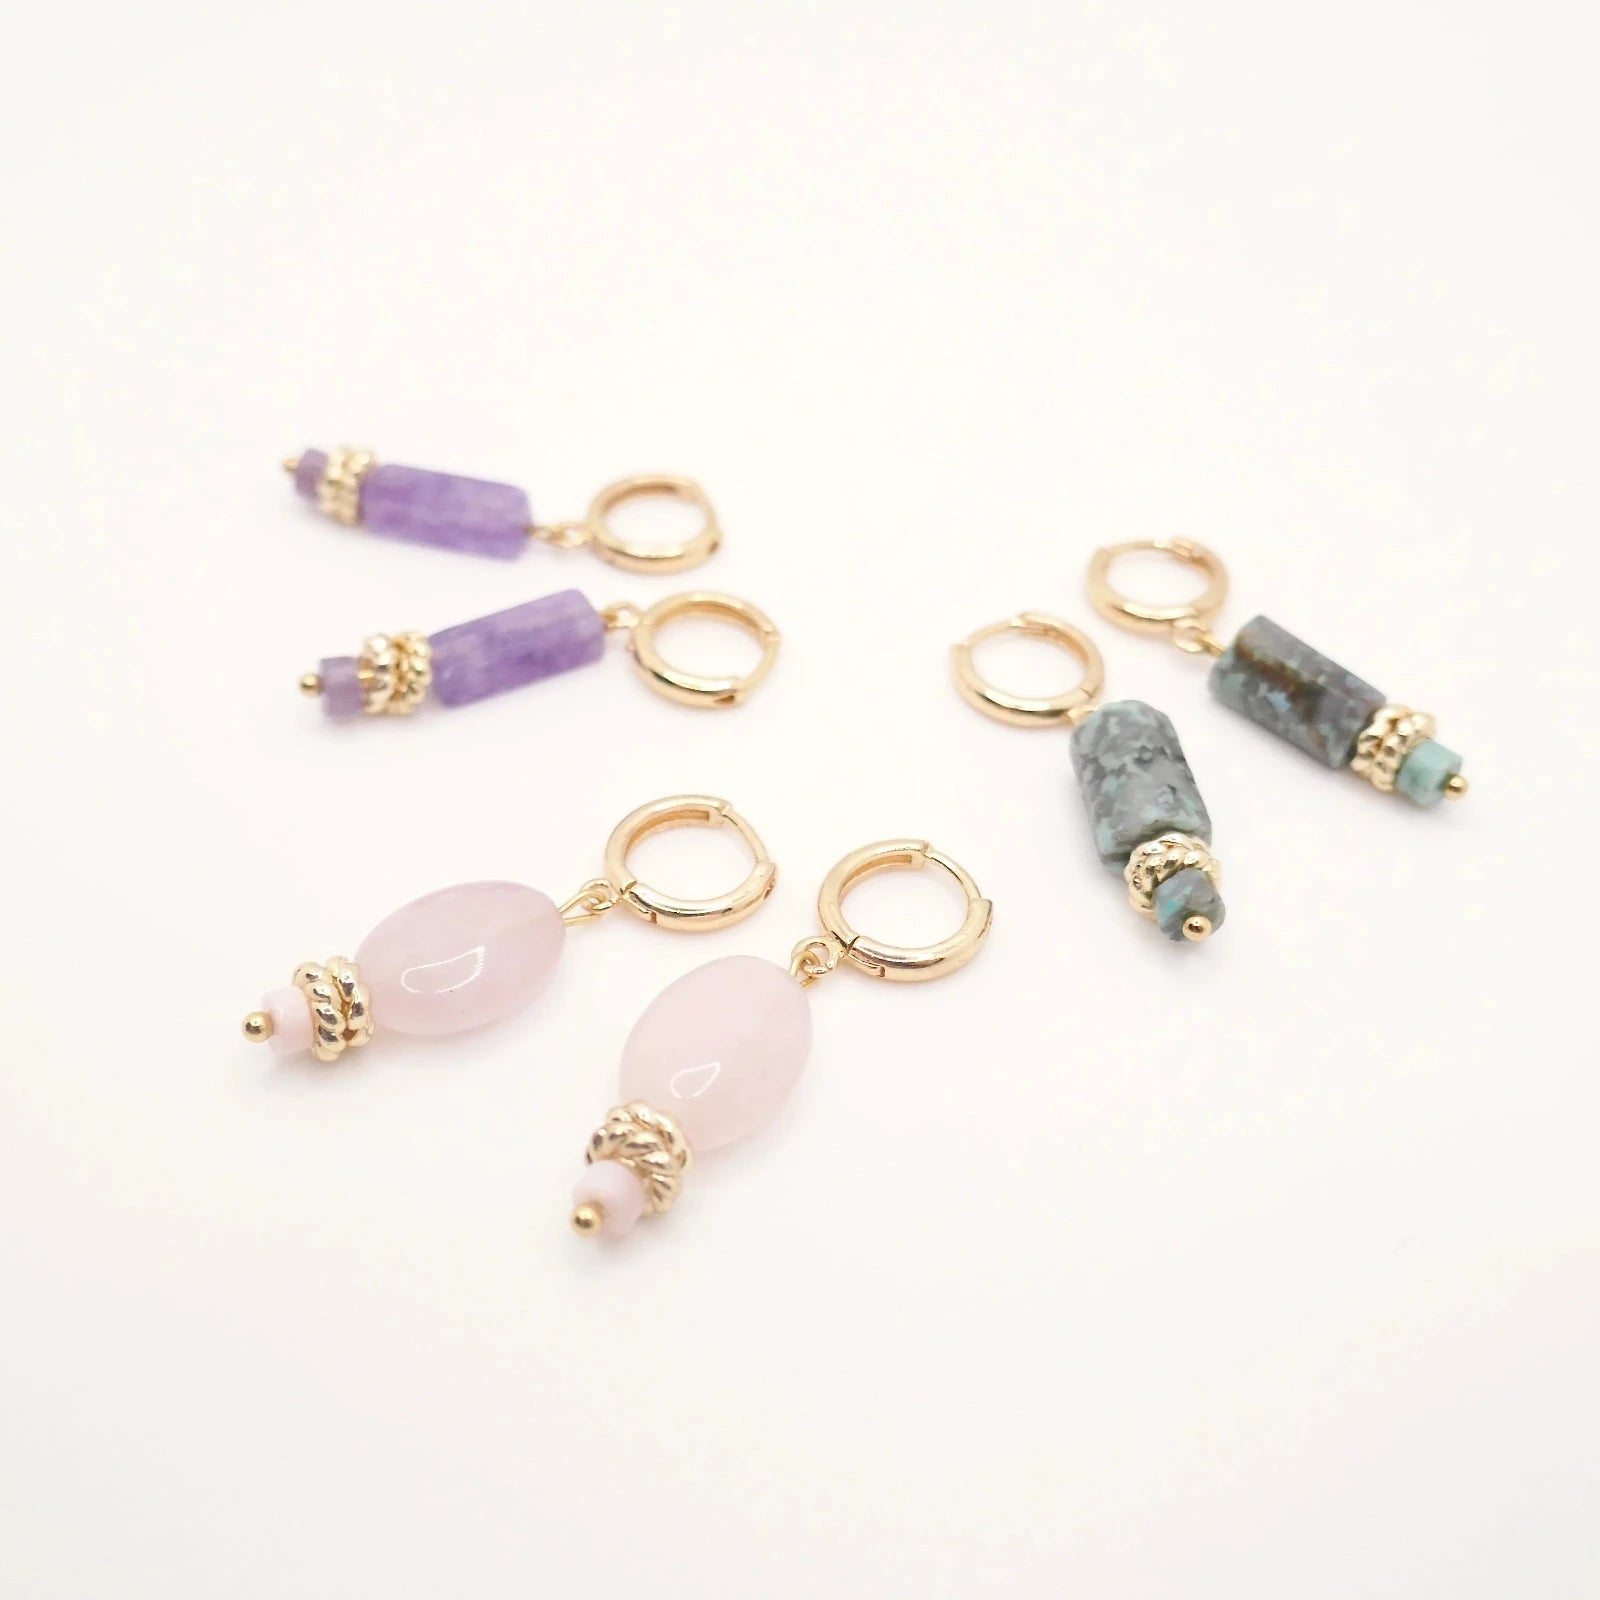 Boucles d'oreilles fines et élégantes pour femme en pierres naturelles de différentes couleurs : rose poudré, or rose, violet et vert